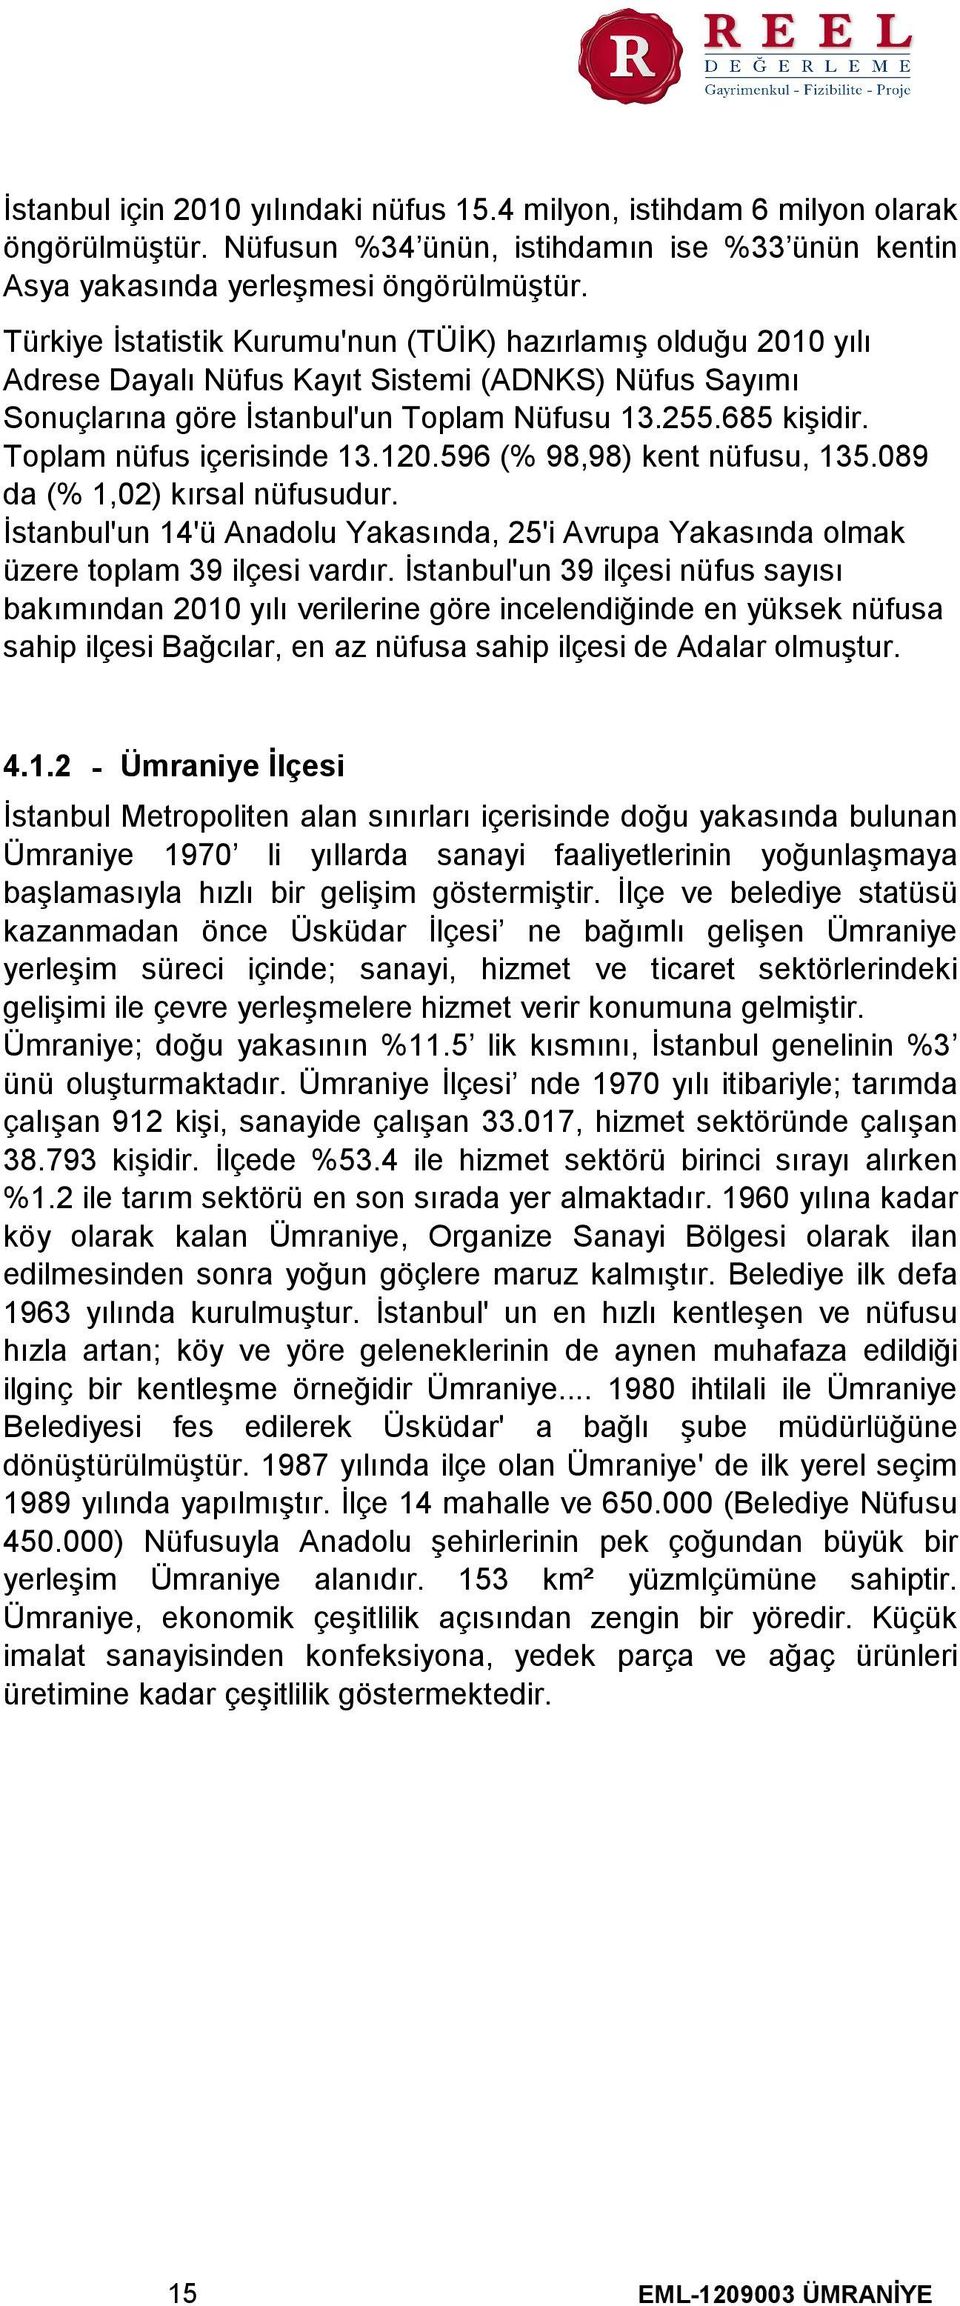 Toplam nüfus içerisinde 13.120.596 (% 98,98) kent nüfusu, 135.089 da (% 1,02) kırsal nüfusudur. İstanbul'un 14'ü Anadolu Yakasında, 25'i Avrupa Yakasında olmak üzere toplam 39 ilçesi vardır.